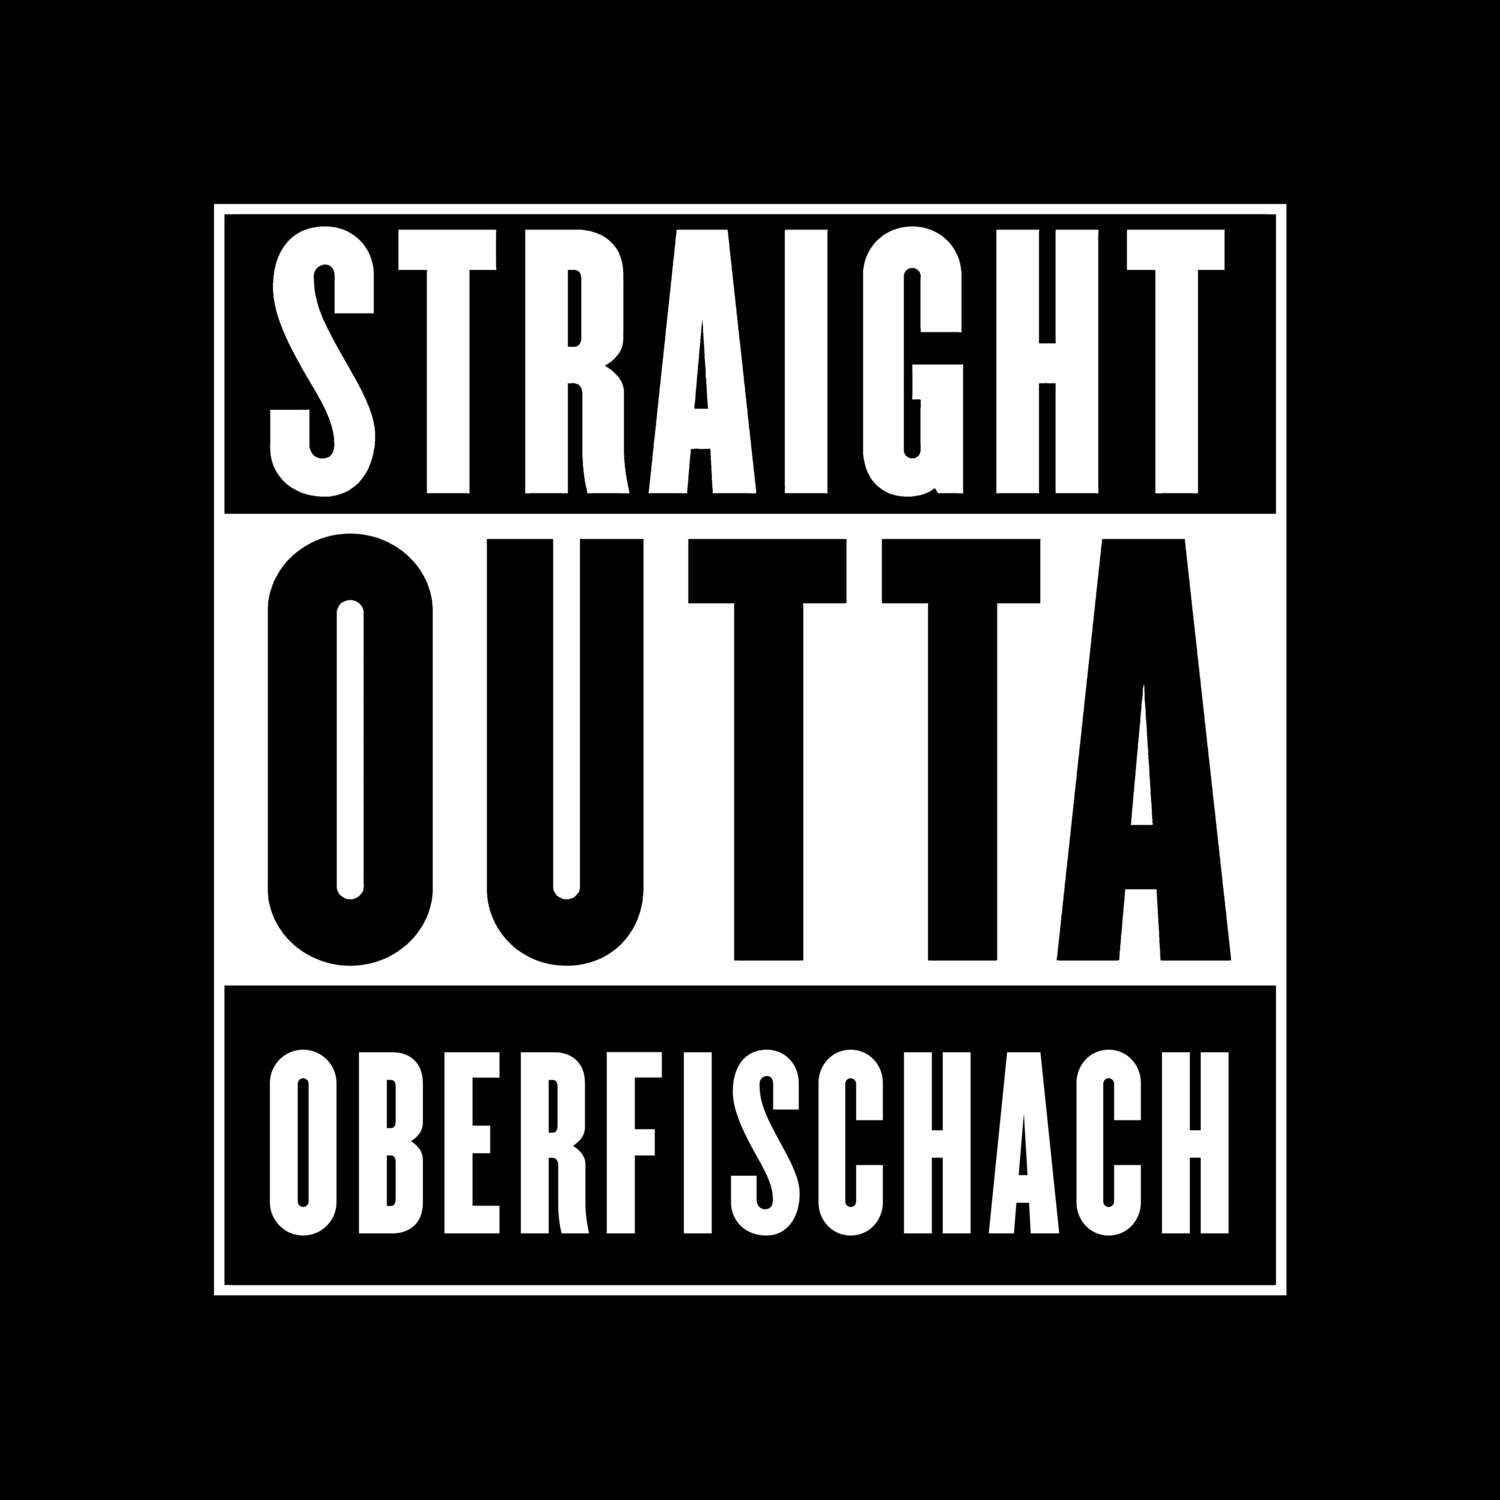 Oberfischach T-Shirt »Straight Outta«